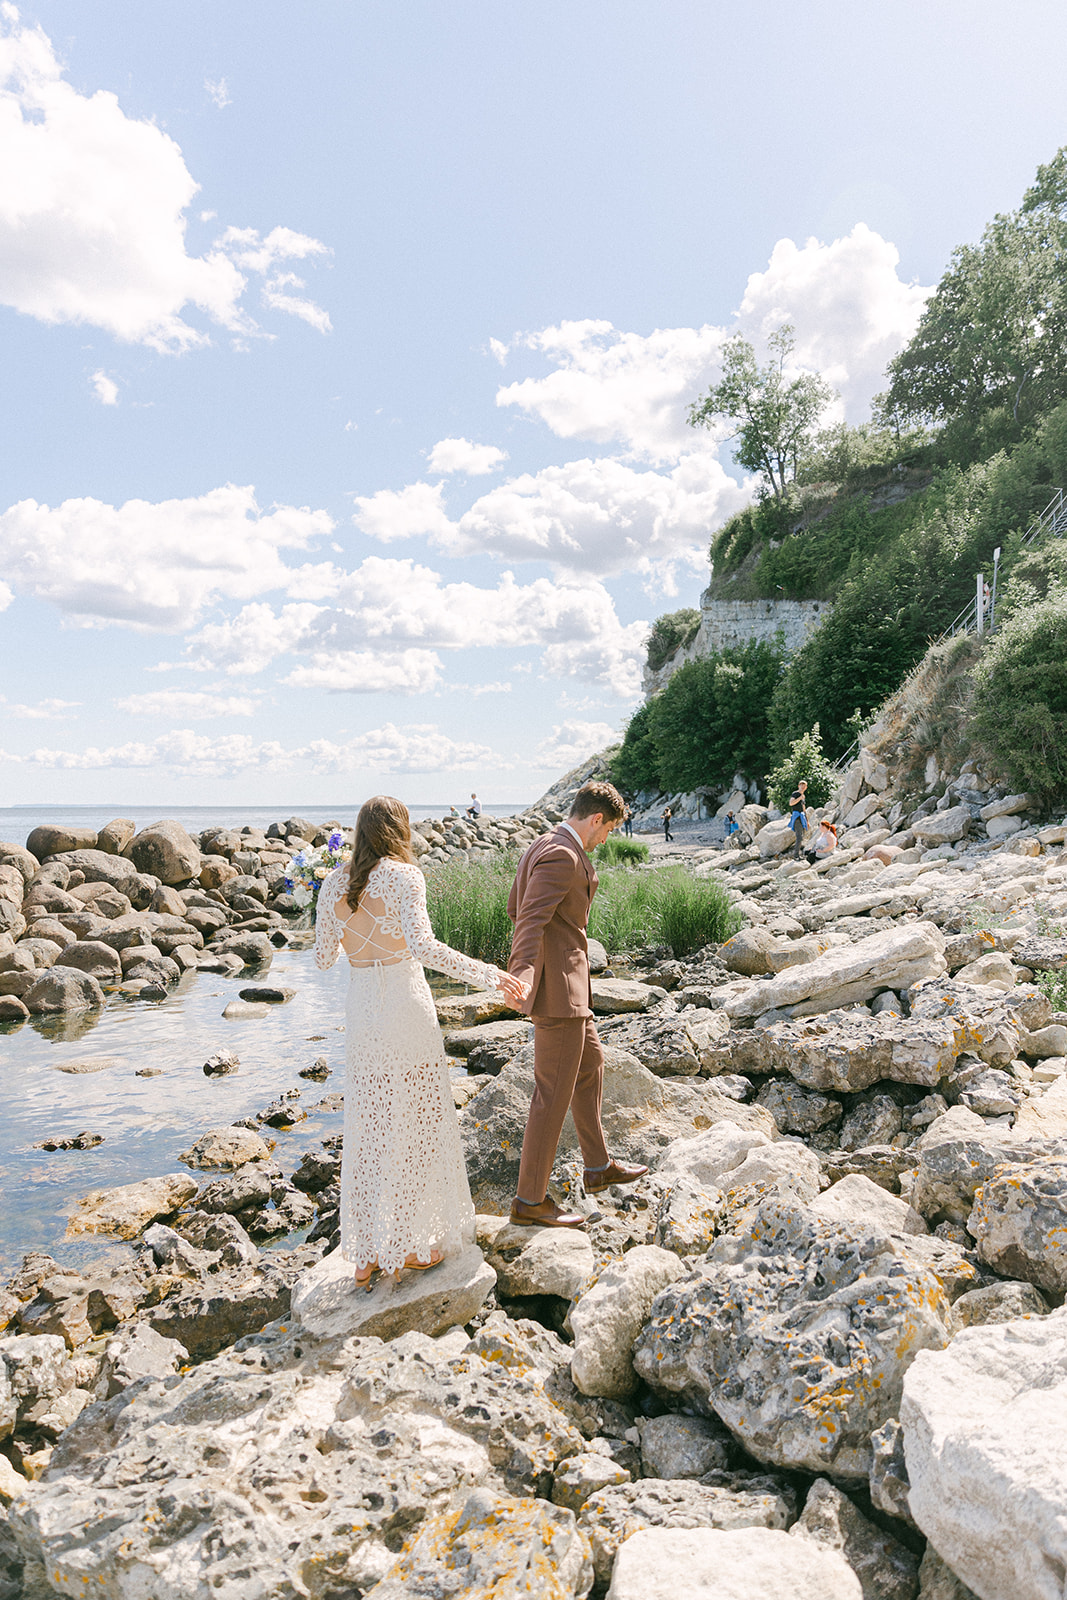 Unforgettable Summer Wedding - Love Finds Its Way in Stevns Klint